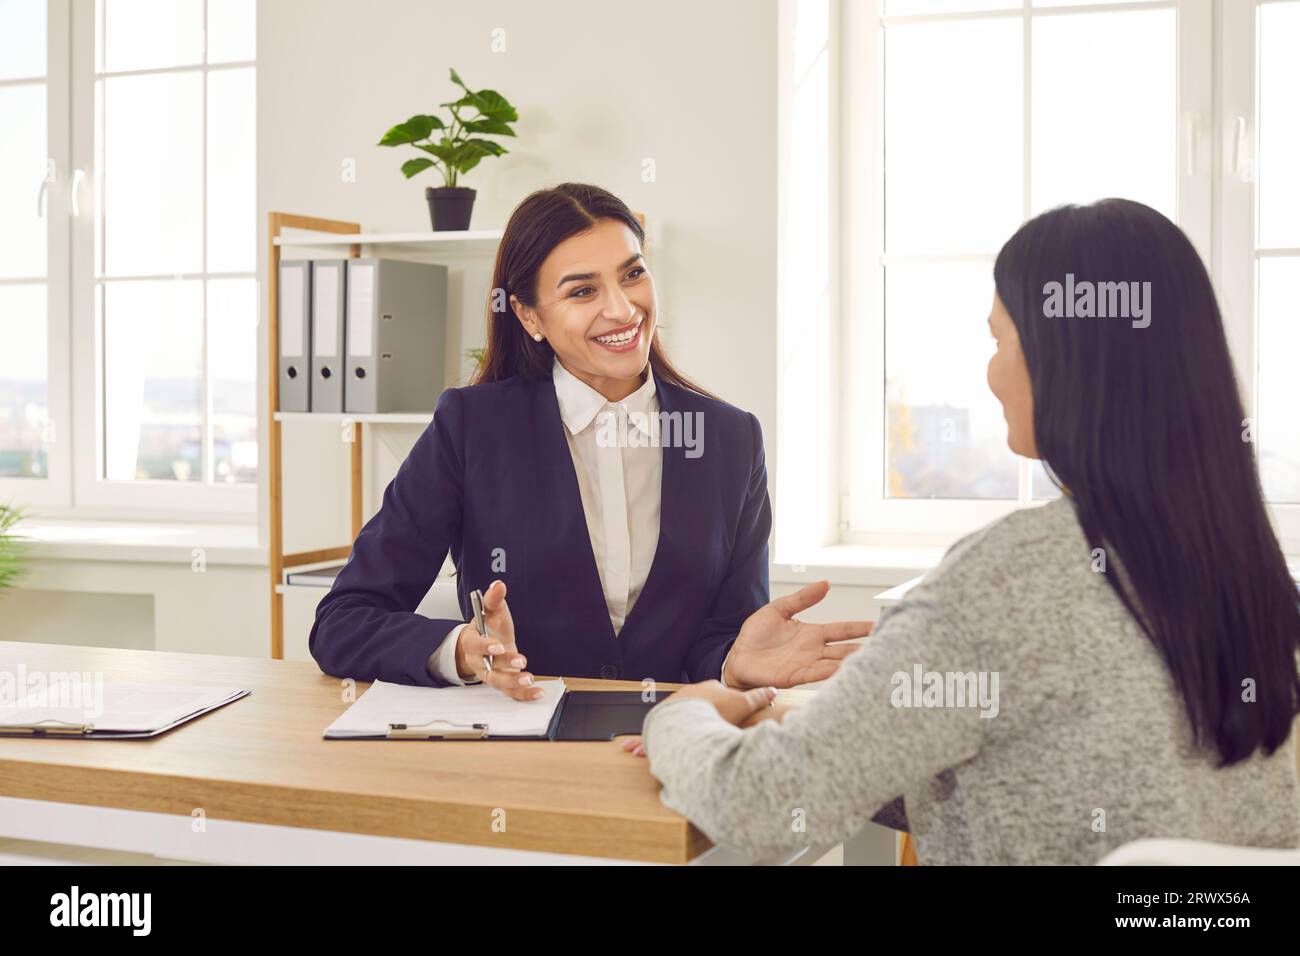 Lächelnde Geschäftsfrau, die mit dem Kunden während eines formellen Meetings im Büro spricht Stockfoto